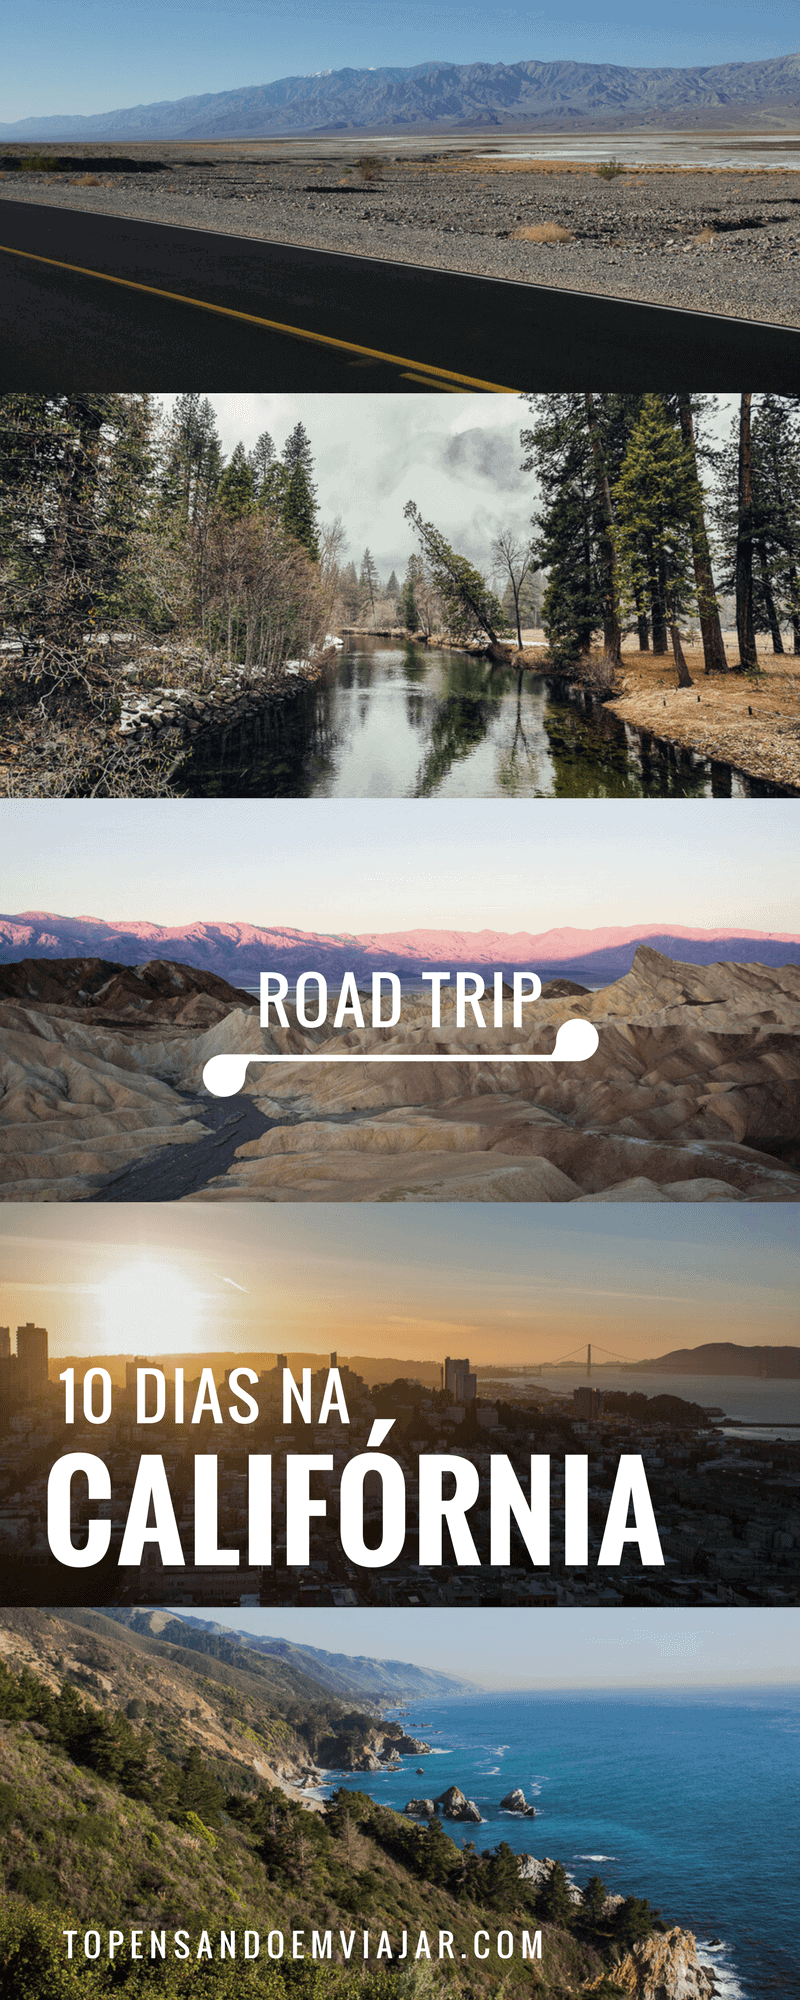 Vamos embarcar em uma viagem de carro inesquecível de 10 dias na Califórnia, um dos estados mais lindos dos Estados Unidos, passando por parques nacionais incríveis como o Death Valley e o Yosemite, São Franciso e dirigindo pela famosa Highway 1, uma das estradas mais lindas do país!